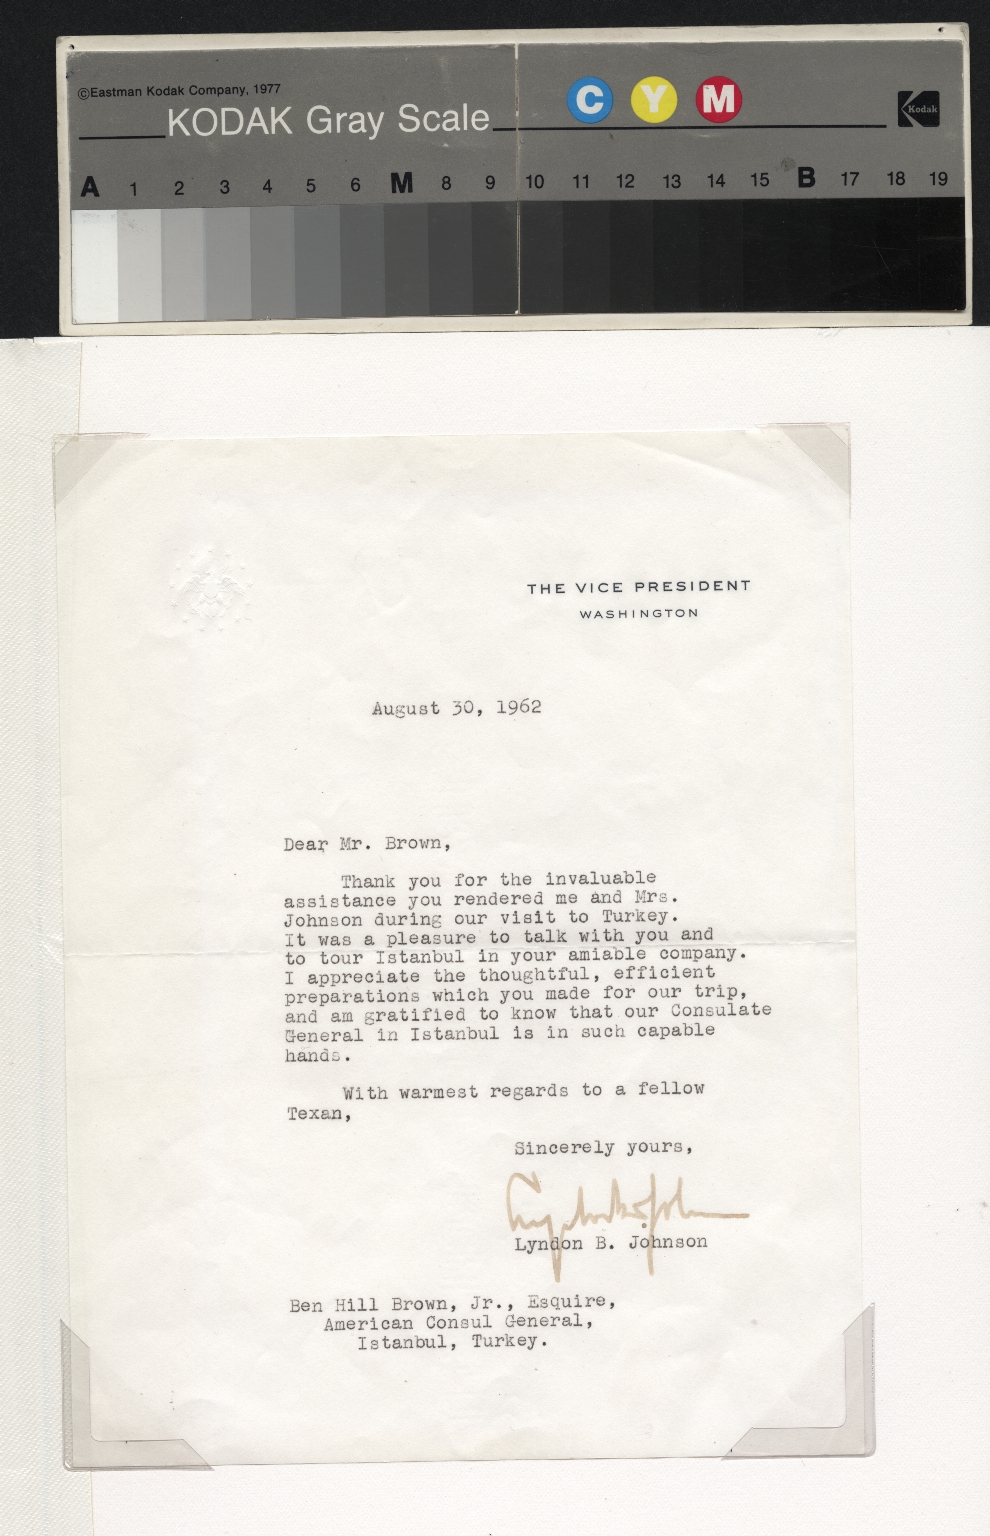 Lyndon Johnson letter to Ben Hill Brown, Jr.